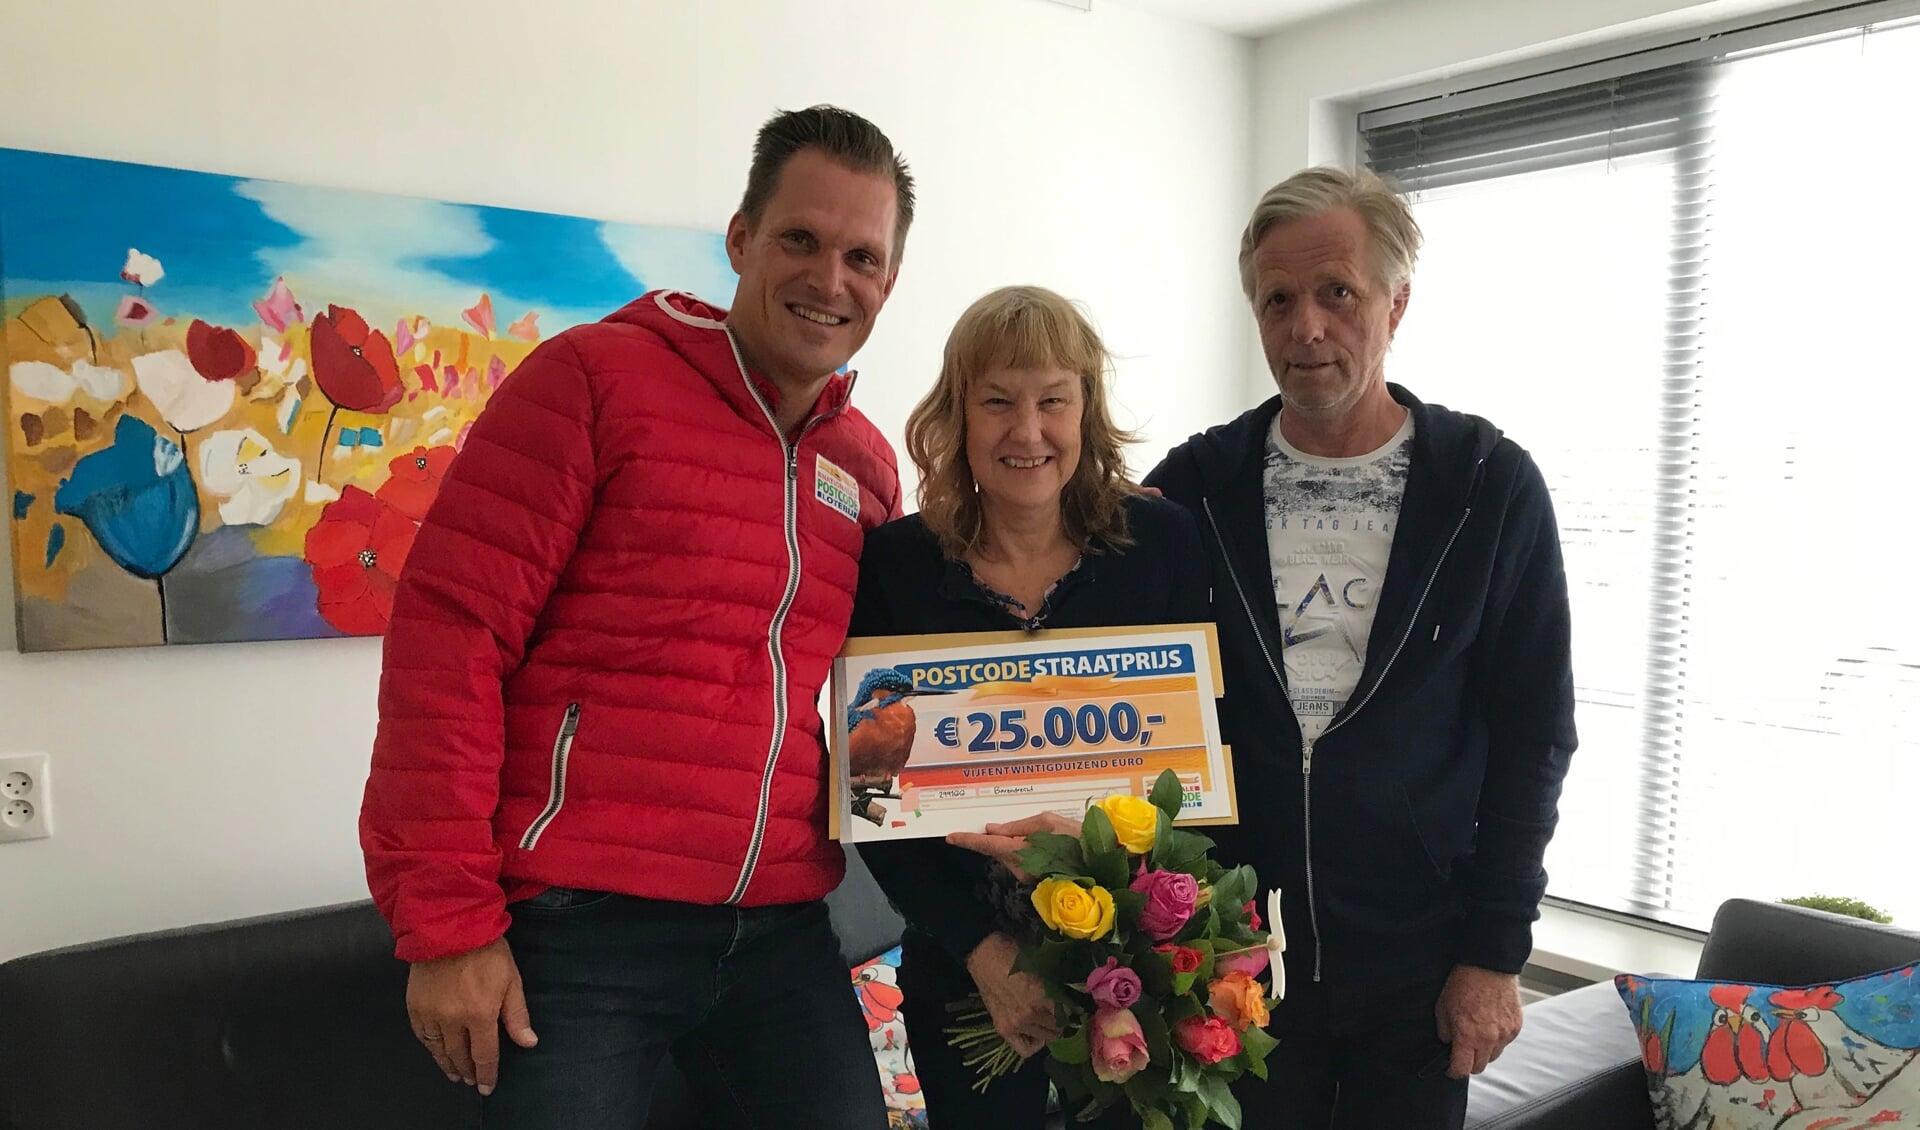 Piet en zijn vrouw uit Barendrecht worden verrast door de Postcode Loterij met de PostcodeStraatprijs-cheque.